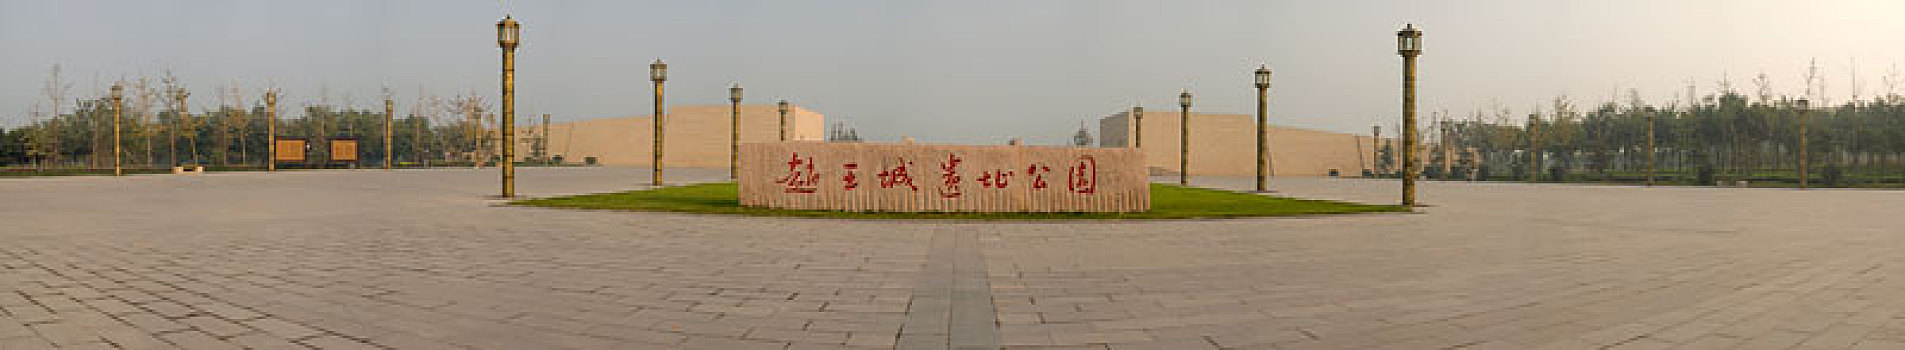 战国时期现存最大王城遗址,赵王城遗址公园